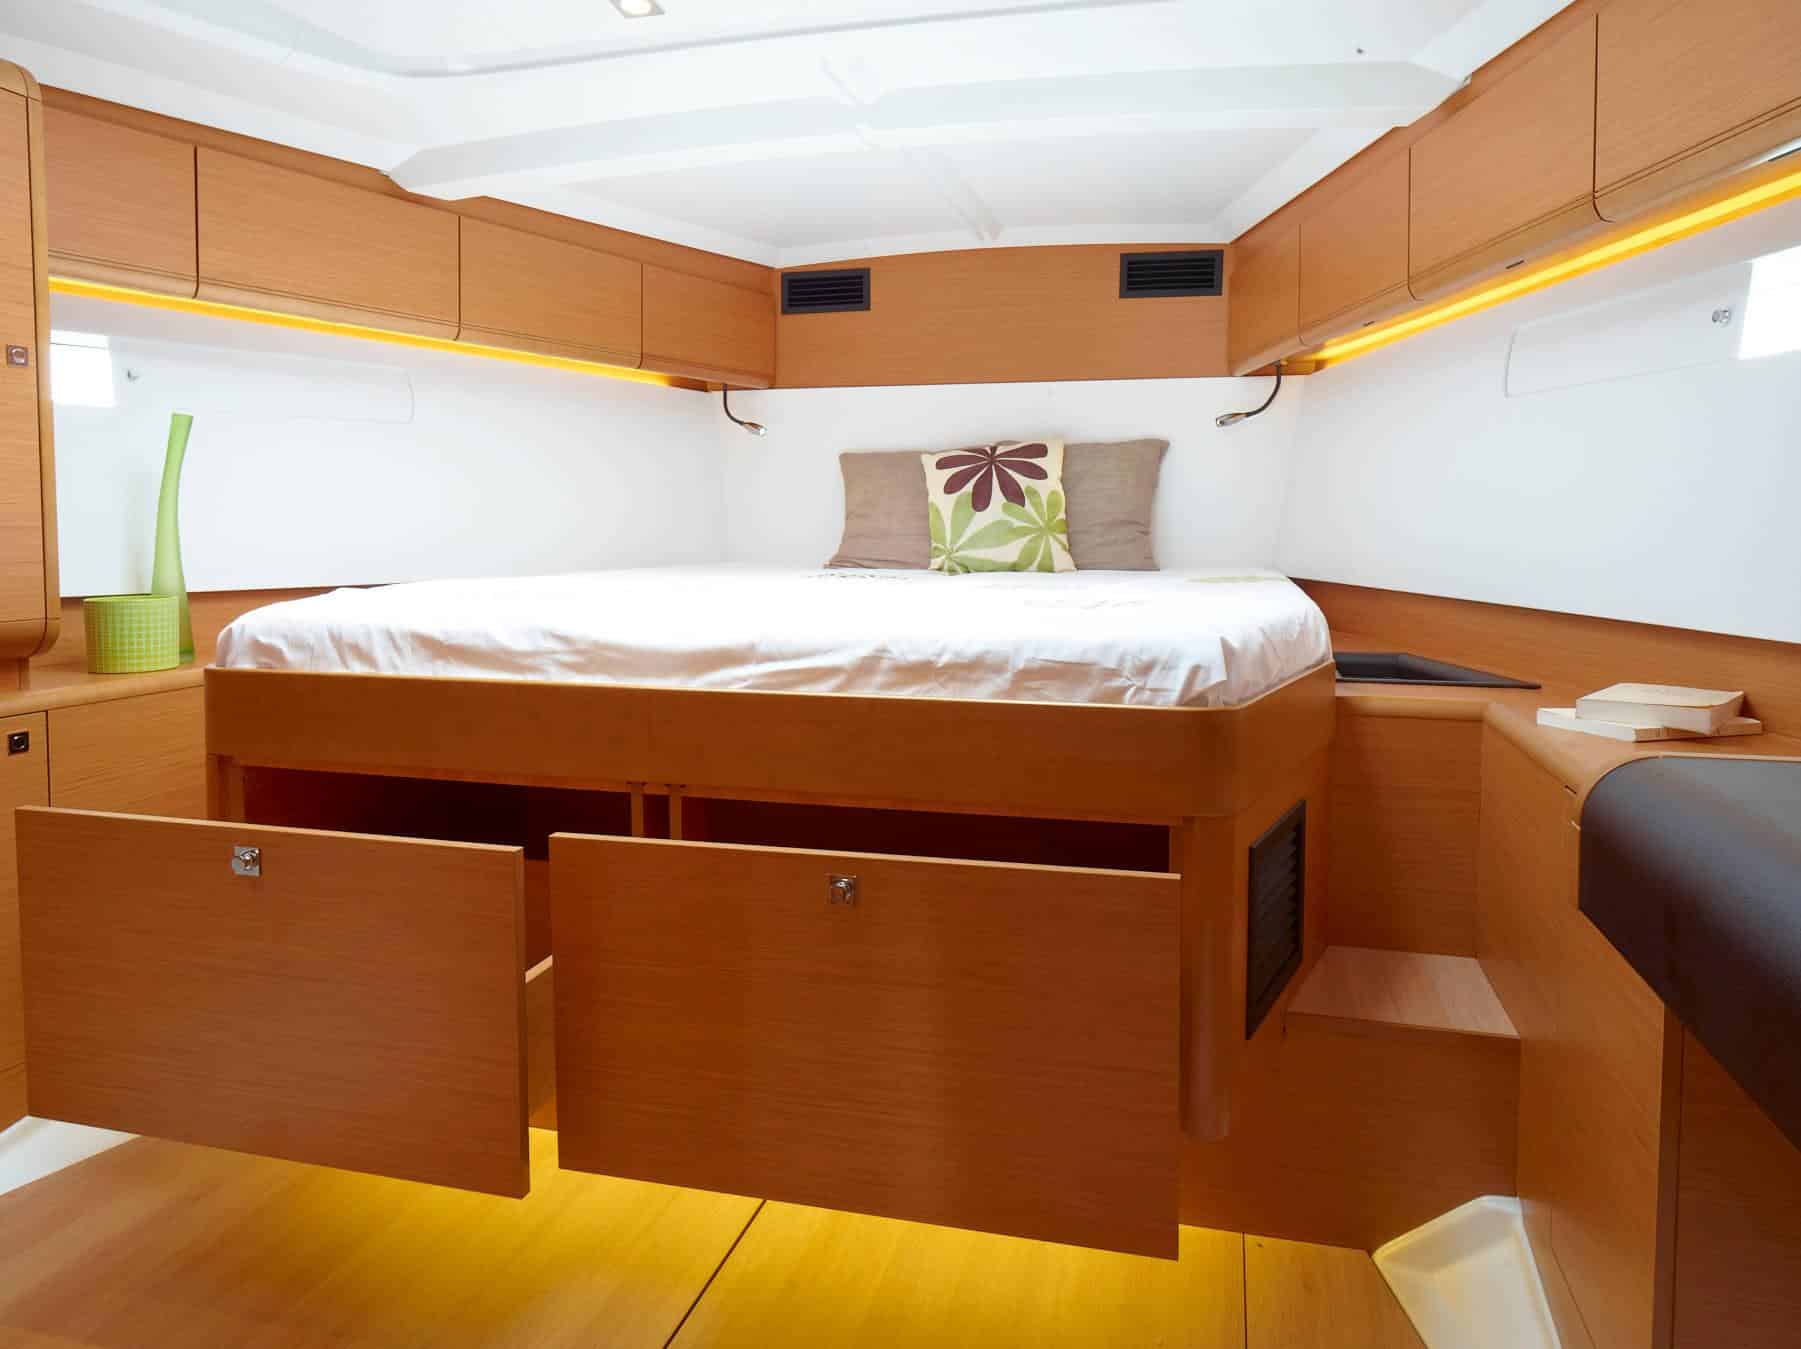 Eine moderne Segelyachtkabine mit großem Bett, Holzschränken und sanfter Beleuchtung, die ein gemütliches und luxuriöses Ambiente schafft.